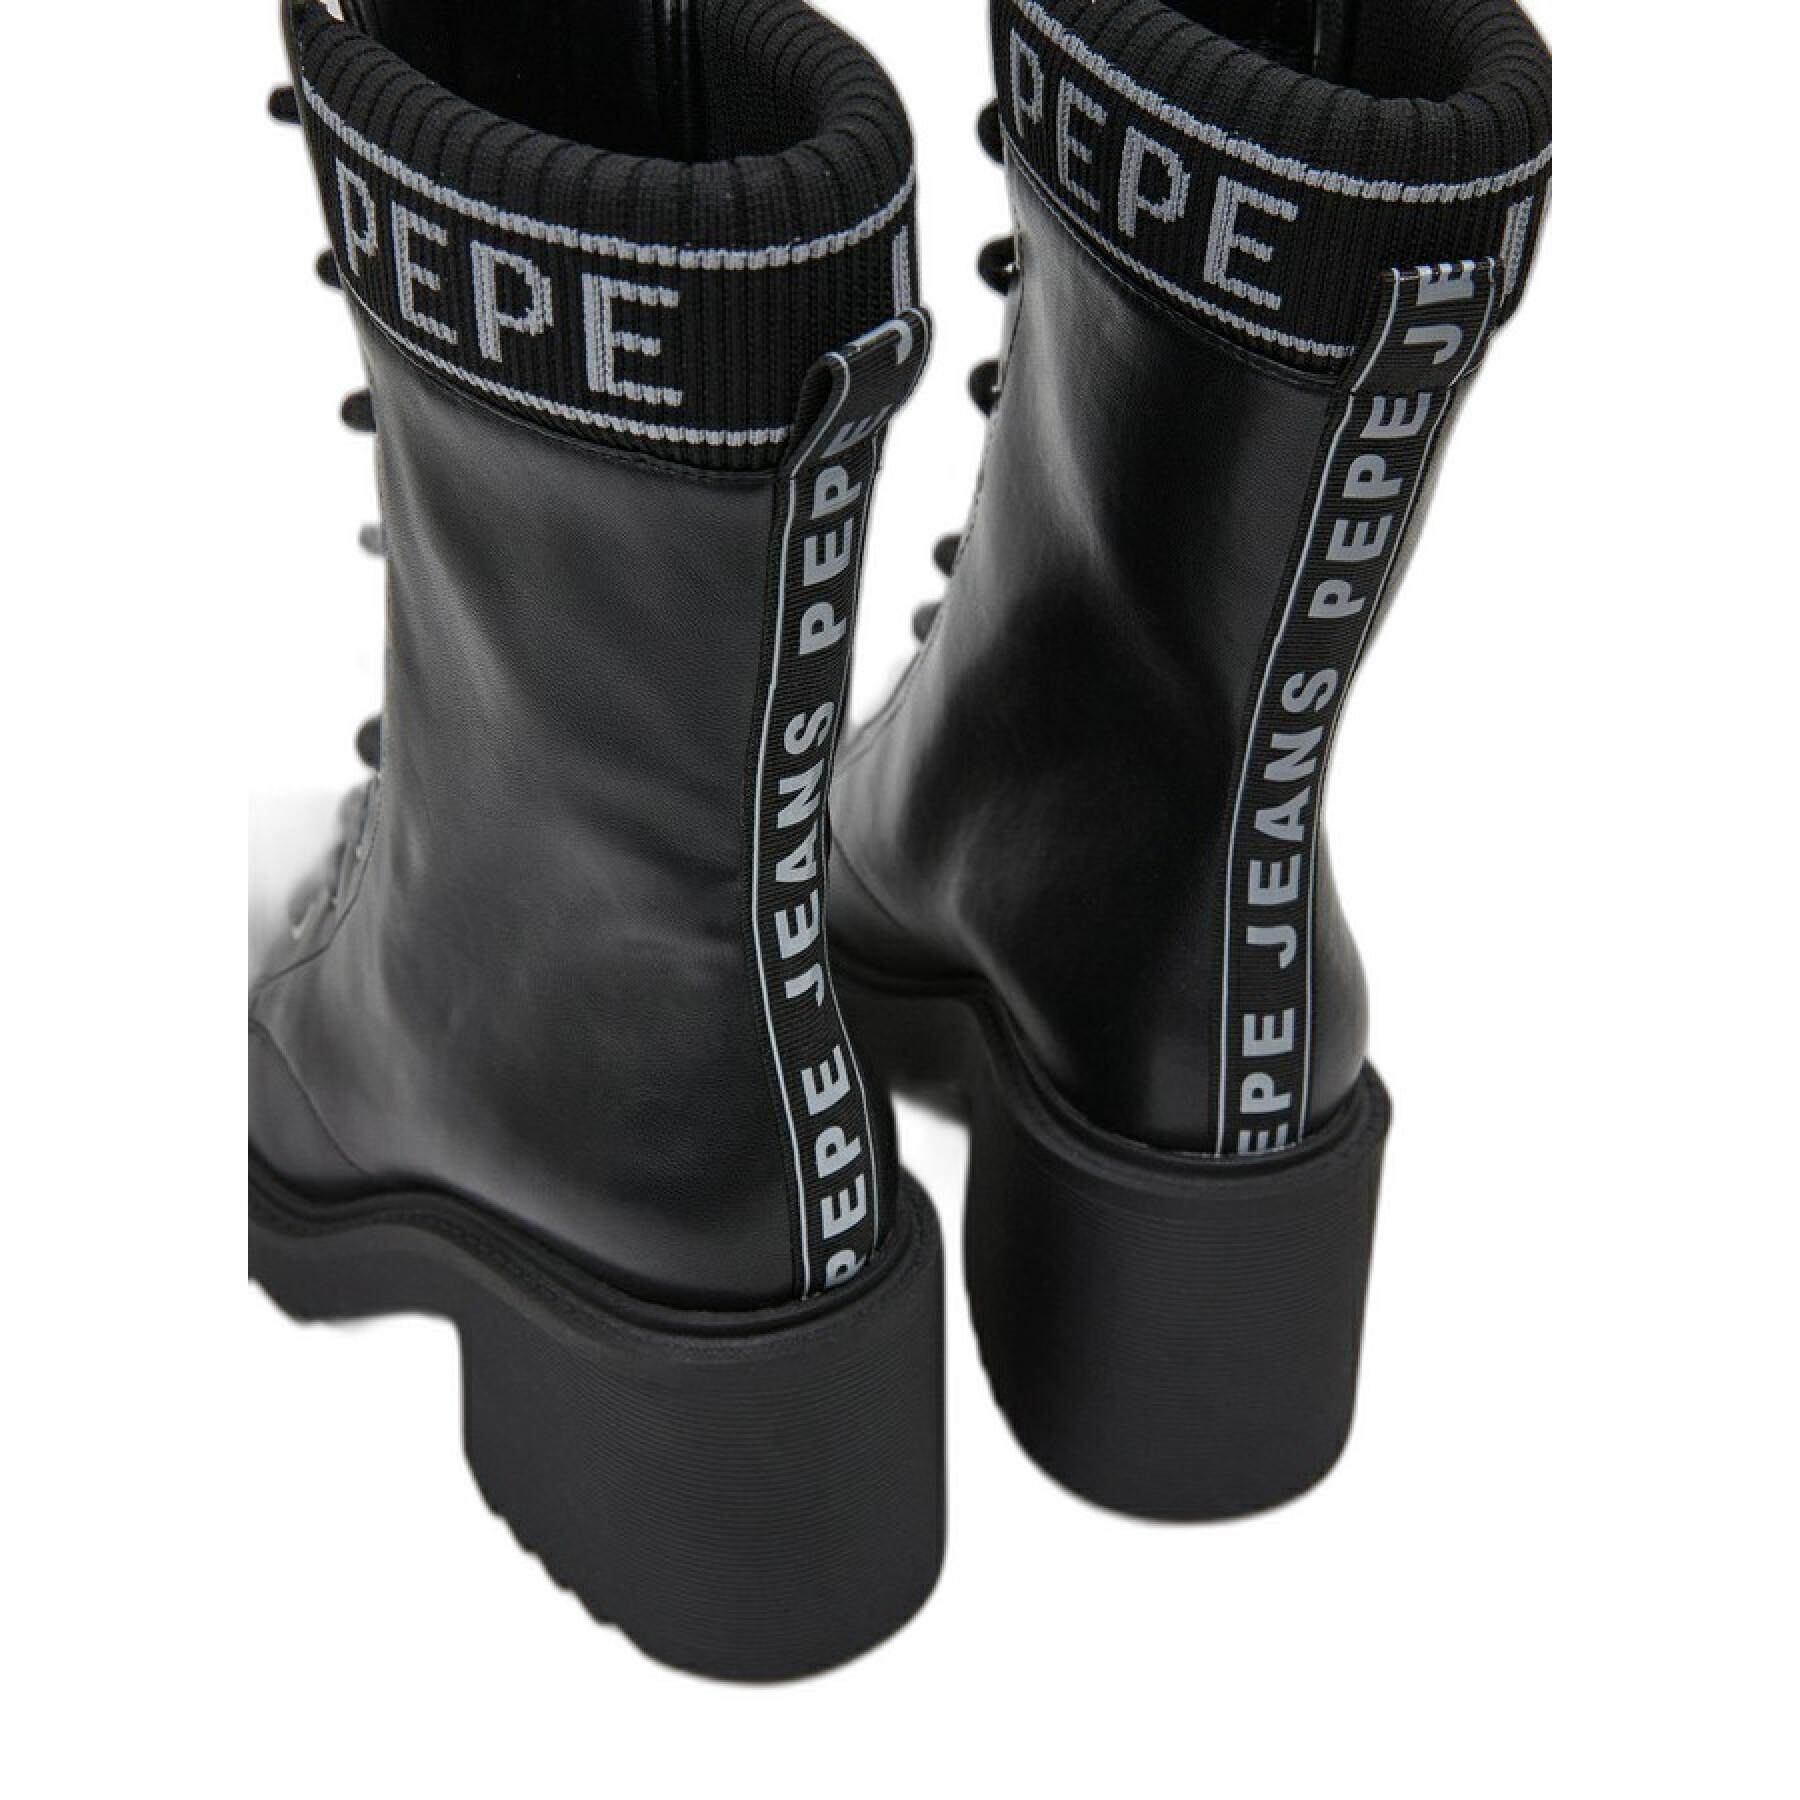 Dameslaarzen met logo Pepe Jeans Boss